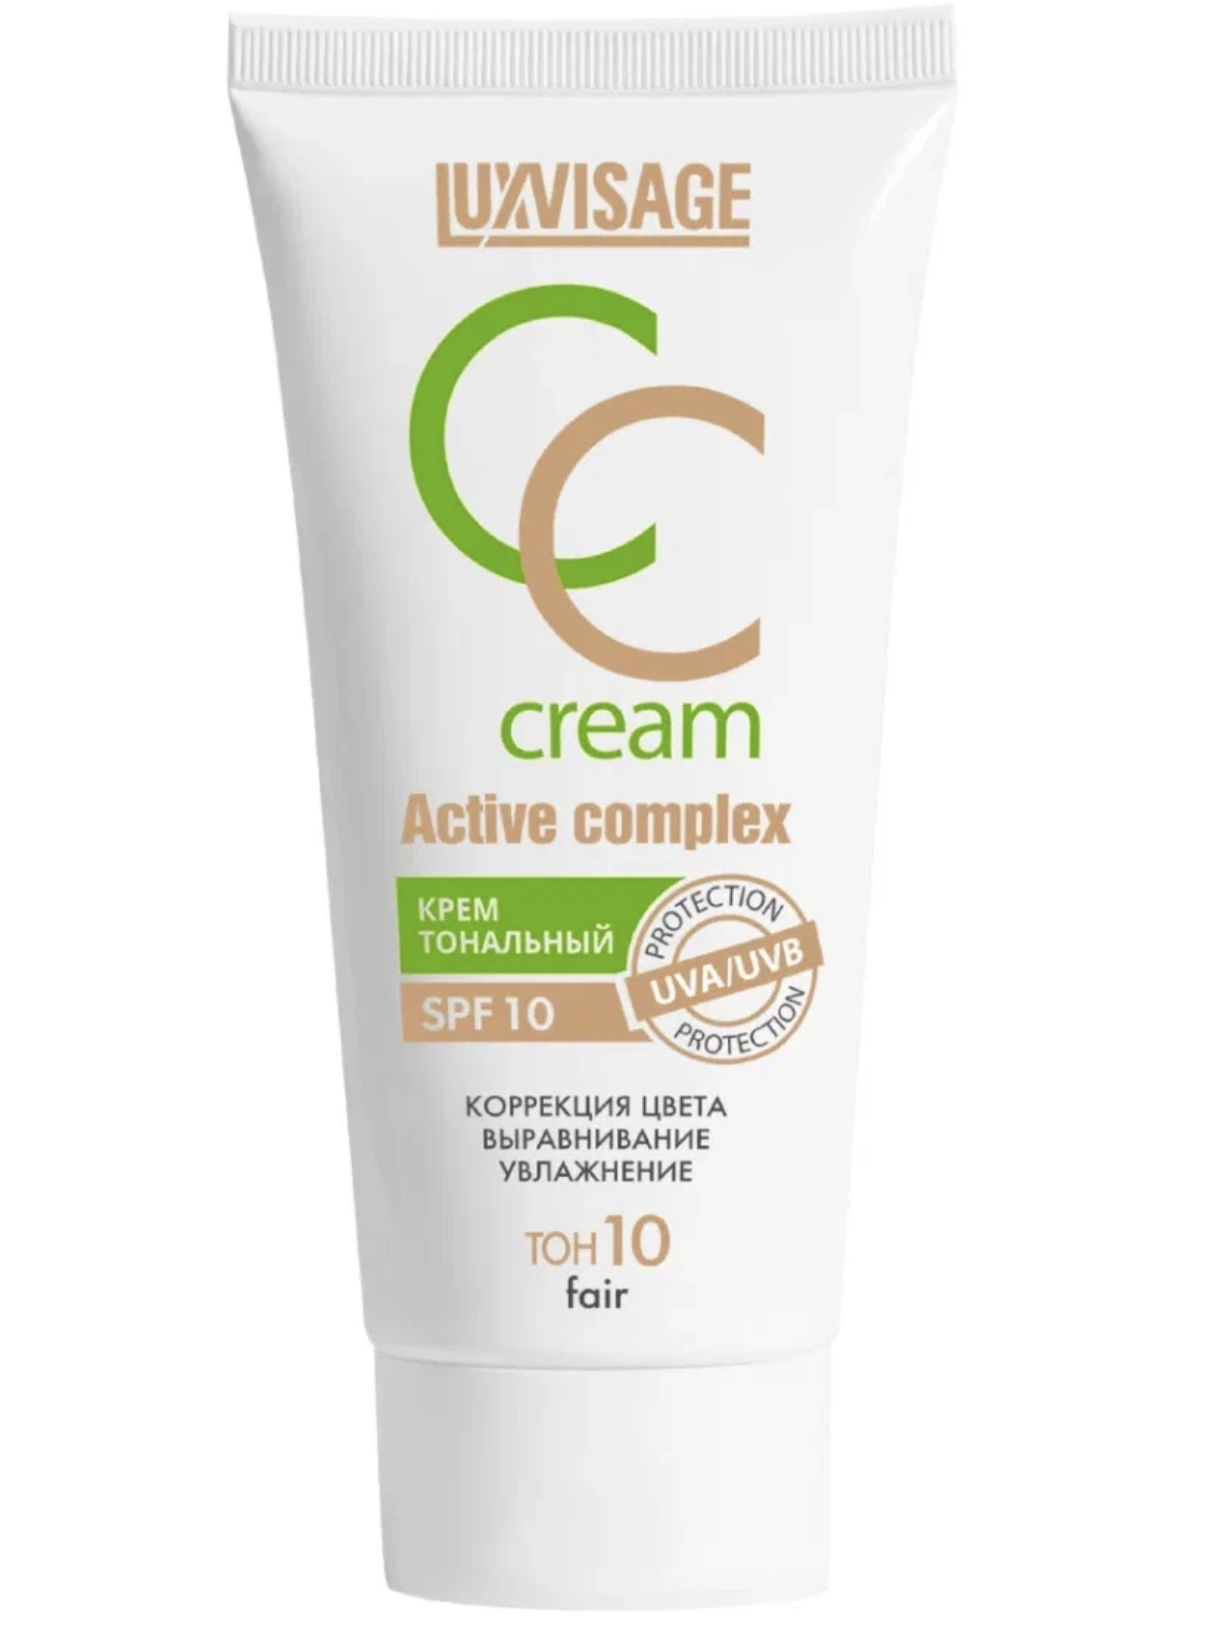   / LuxVisage -   CC Cream Active Complex  10 Fair 35 